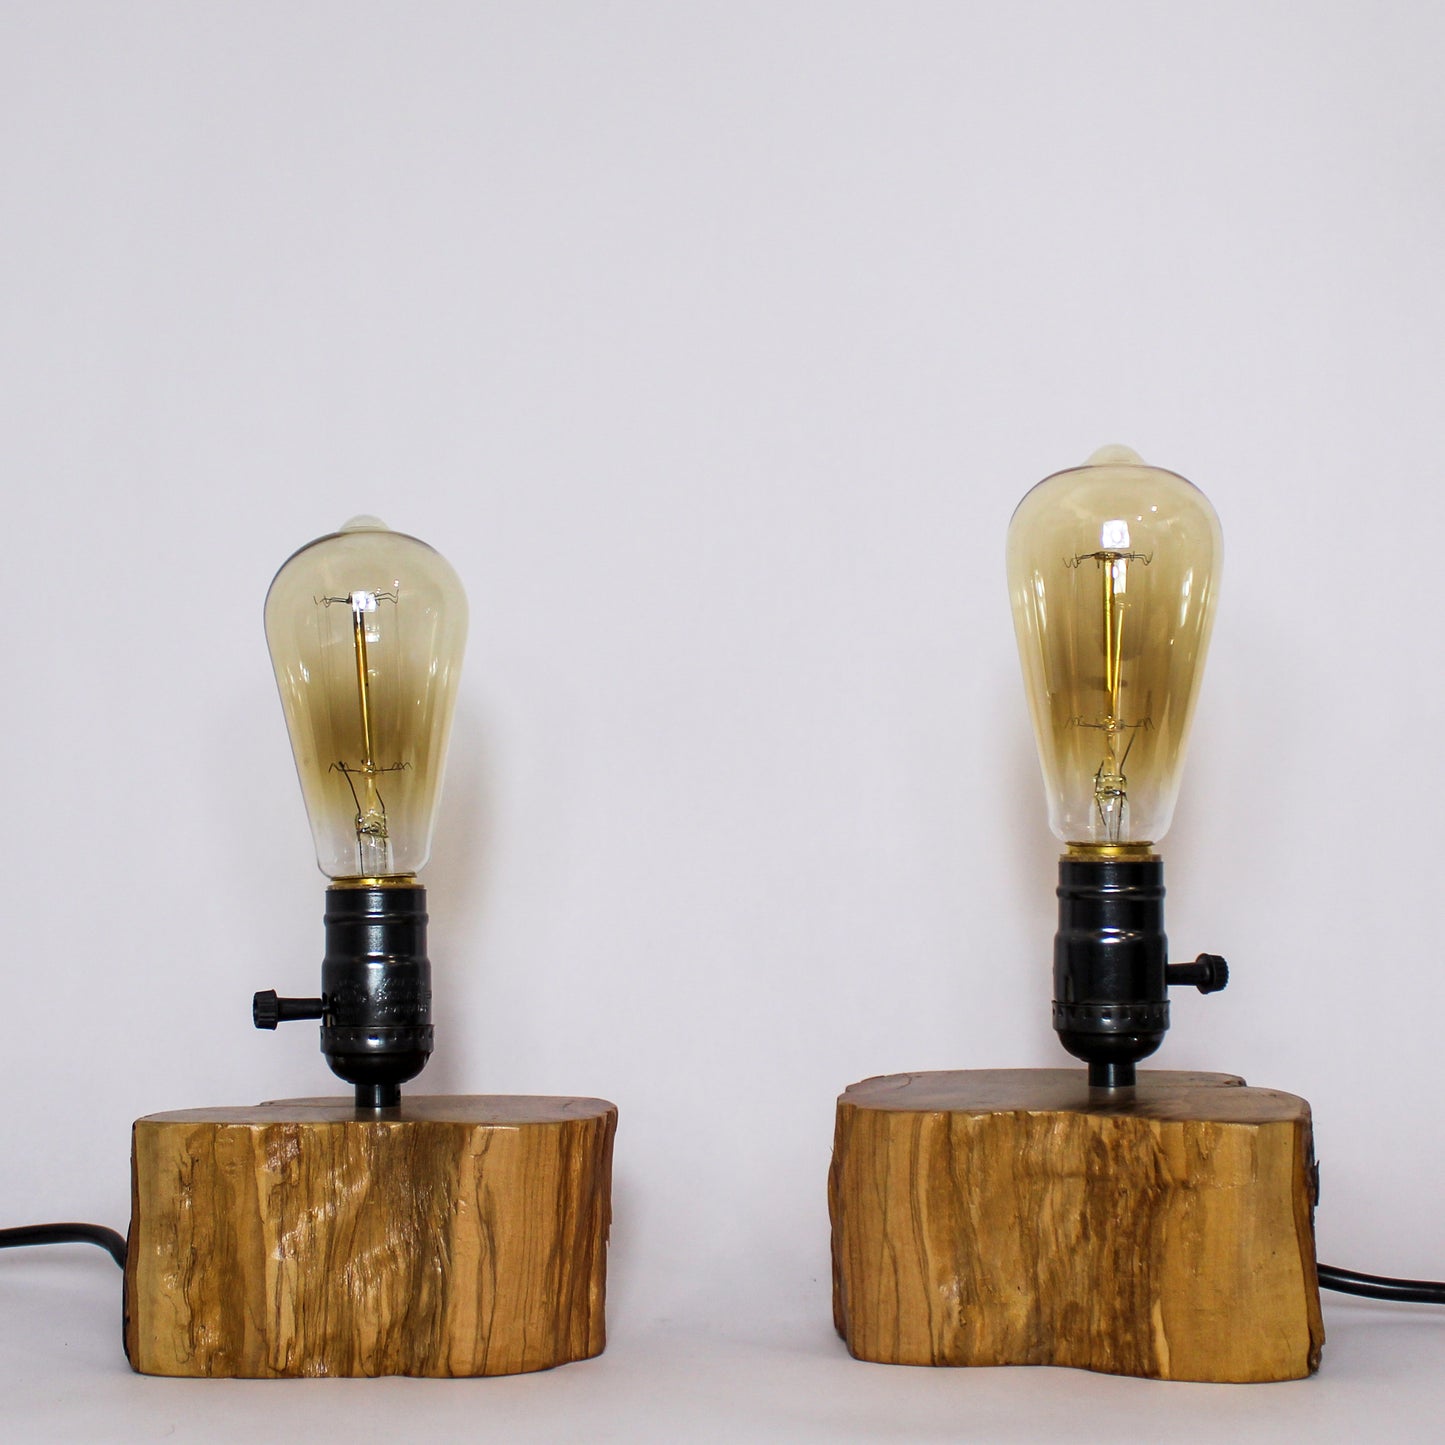 Olive tabletop lamp (Left)